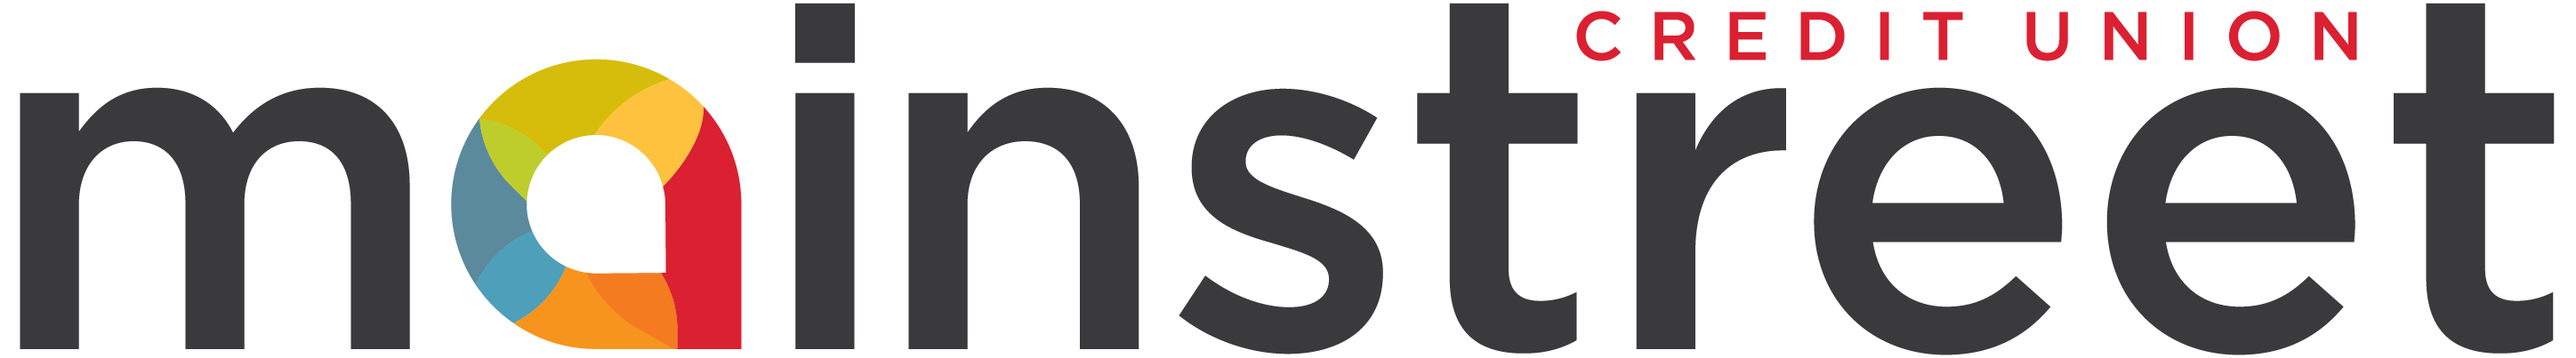 mainstreet-logo-white-bg